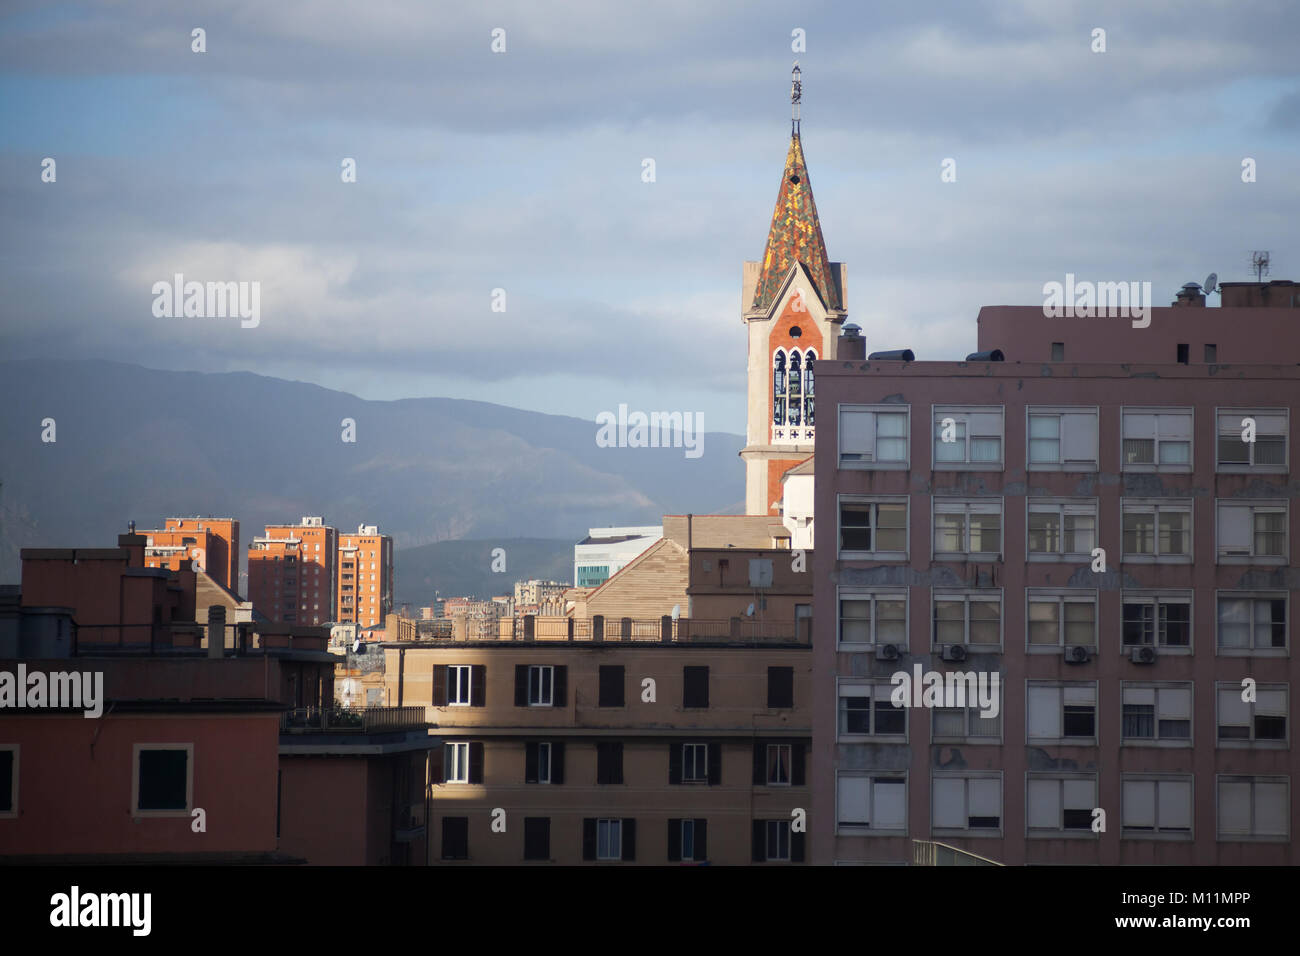 Genoa cityscape with Parish Church Santa Maria Delle Grazie Stock Photo